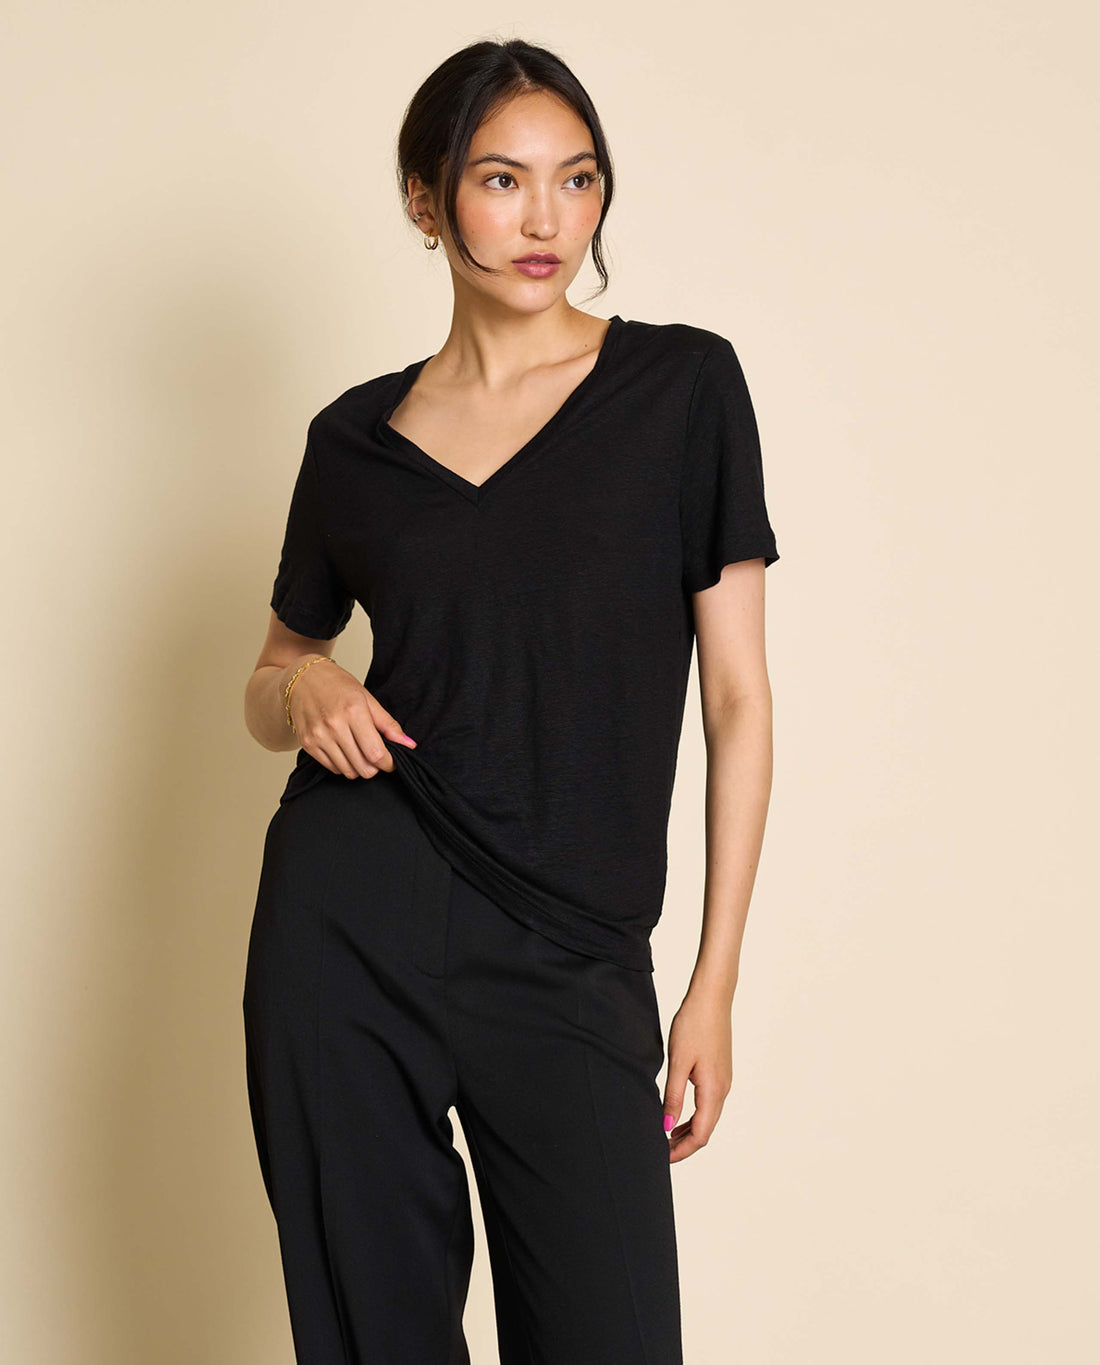 marché commun jan n june femme t-shirt manches courtes lin biologique noir